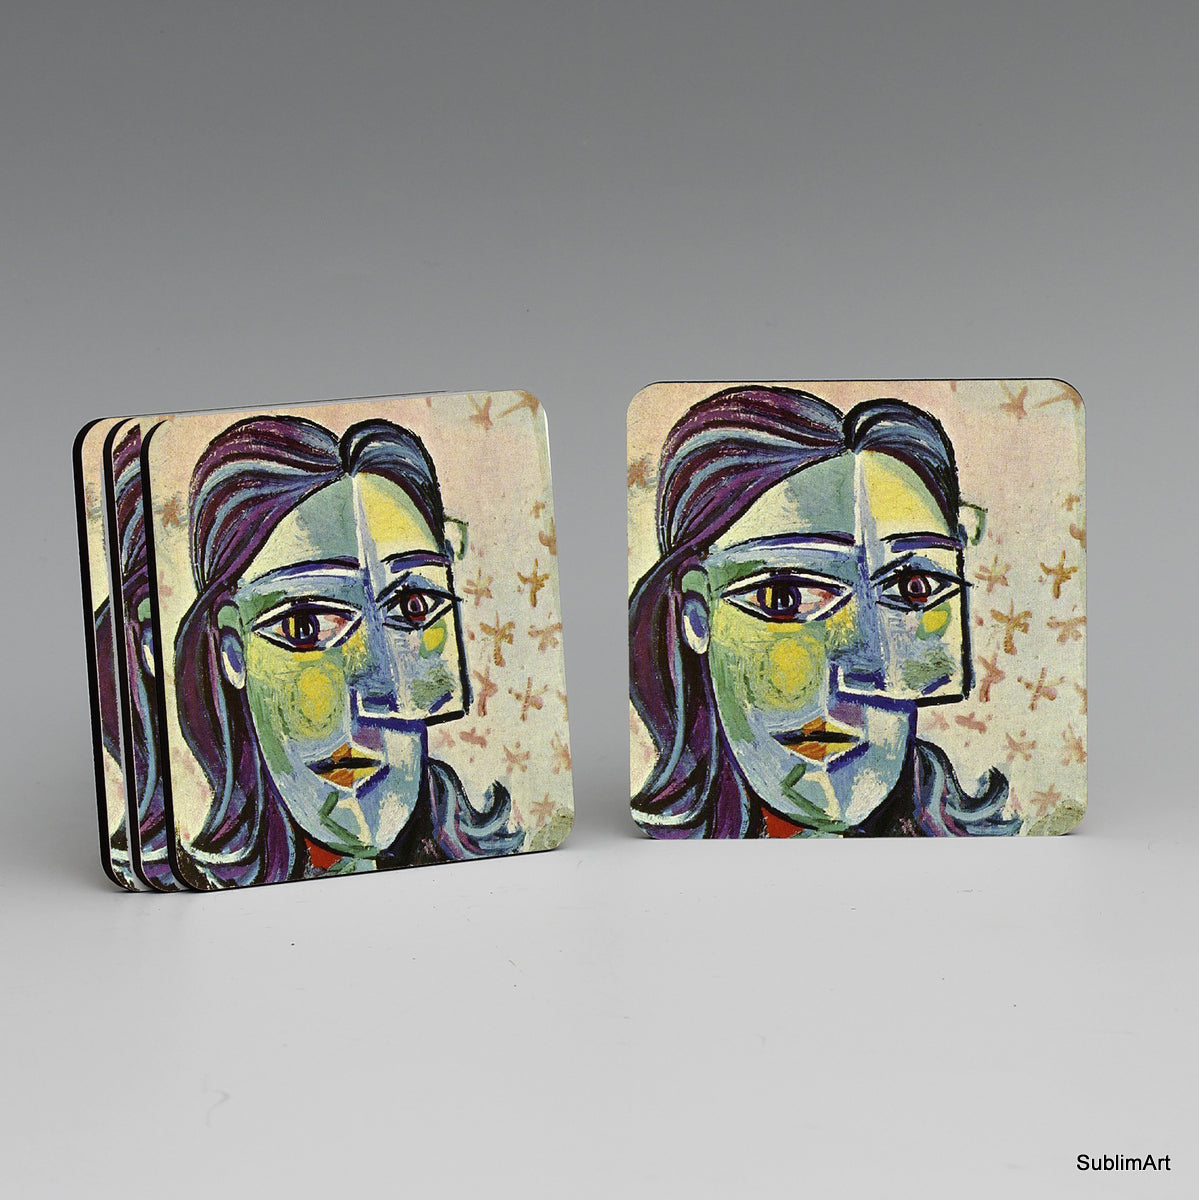 SUBLIMART: MDF Hardboard Set of 4 Coasters - Design: Picasso Modernism 03